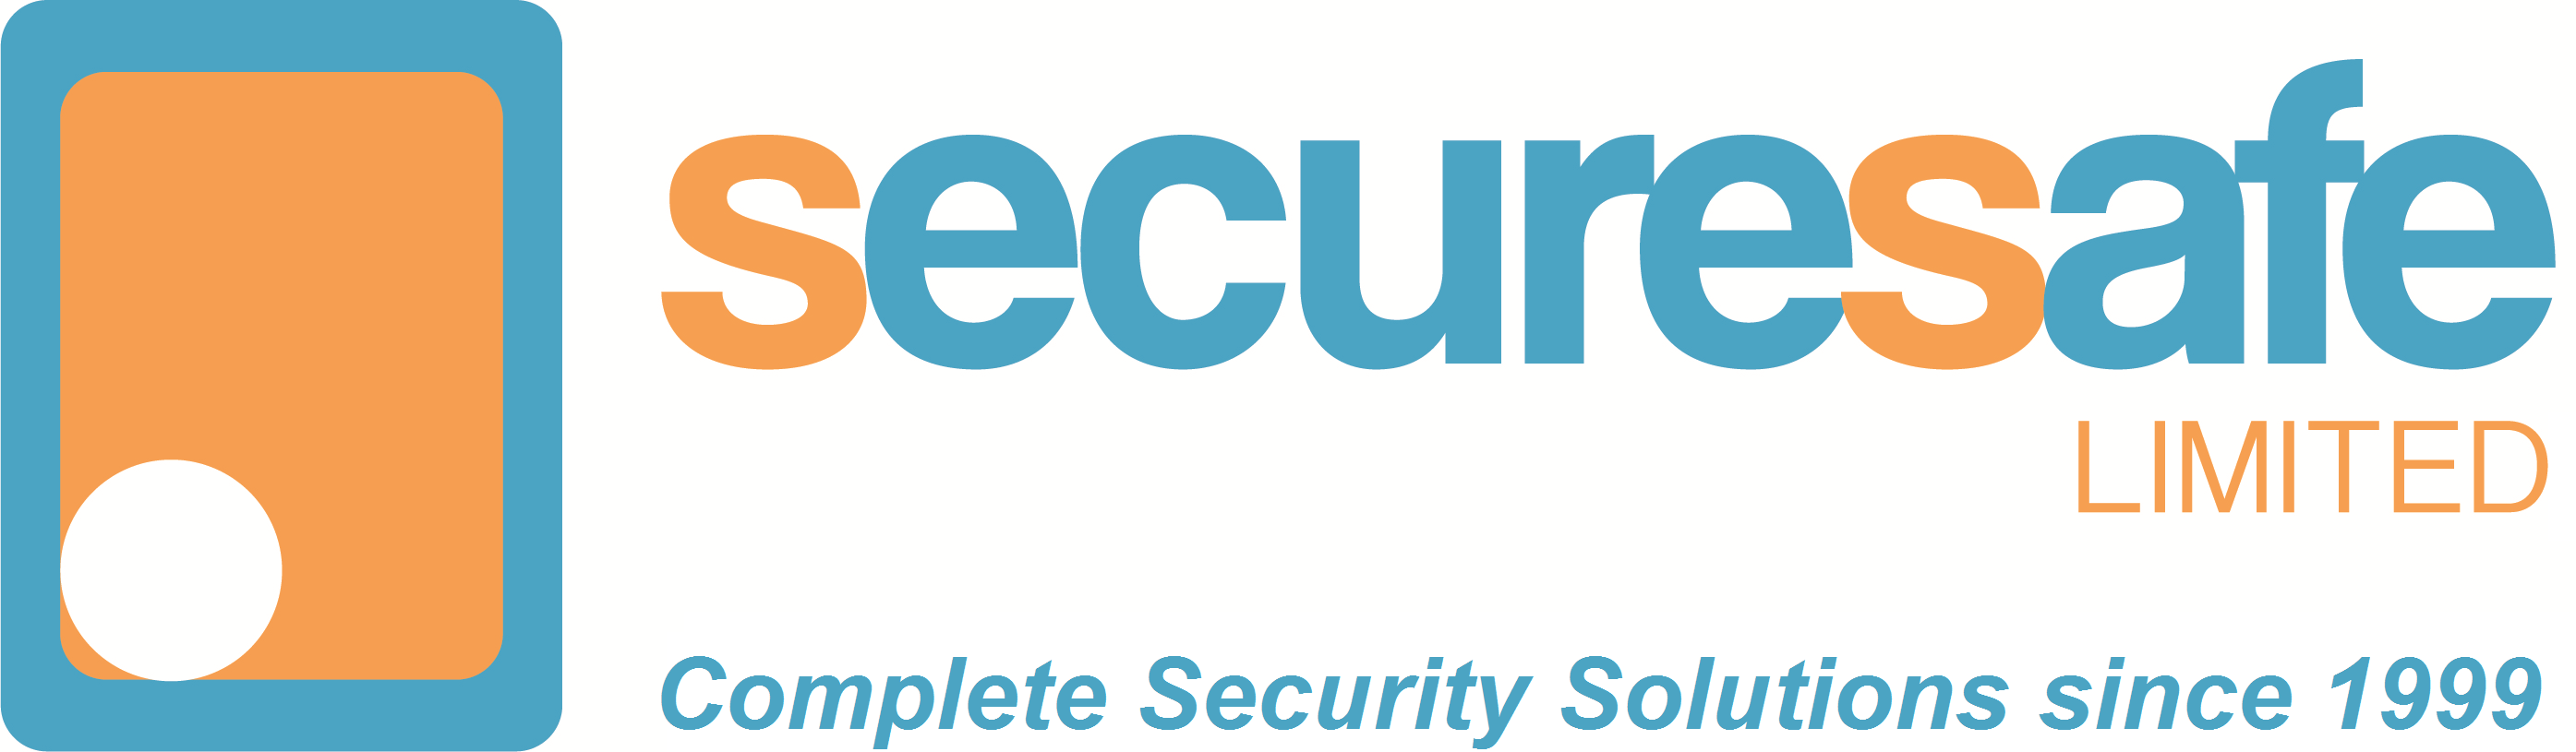 securesafe logo